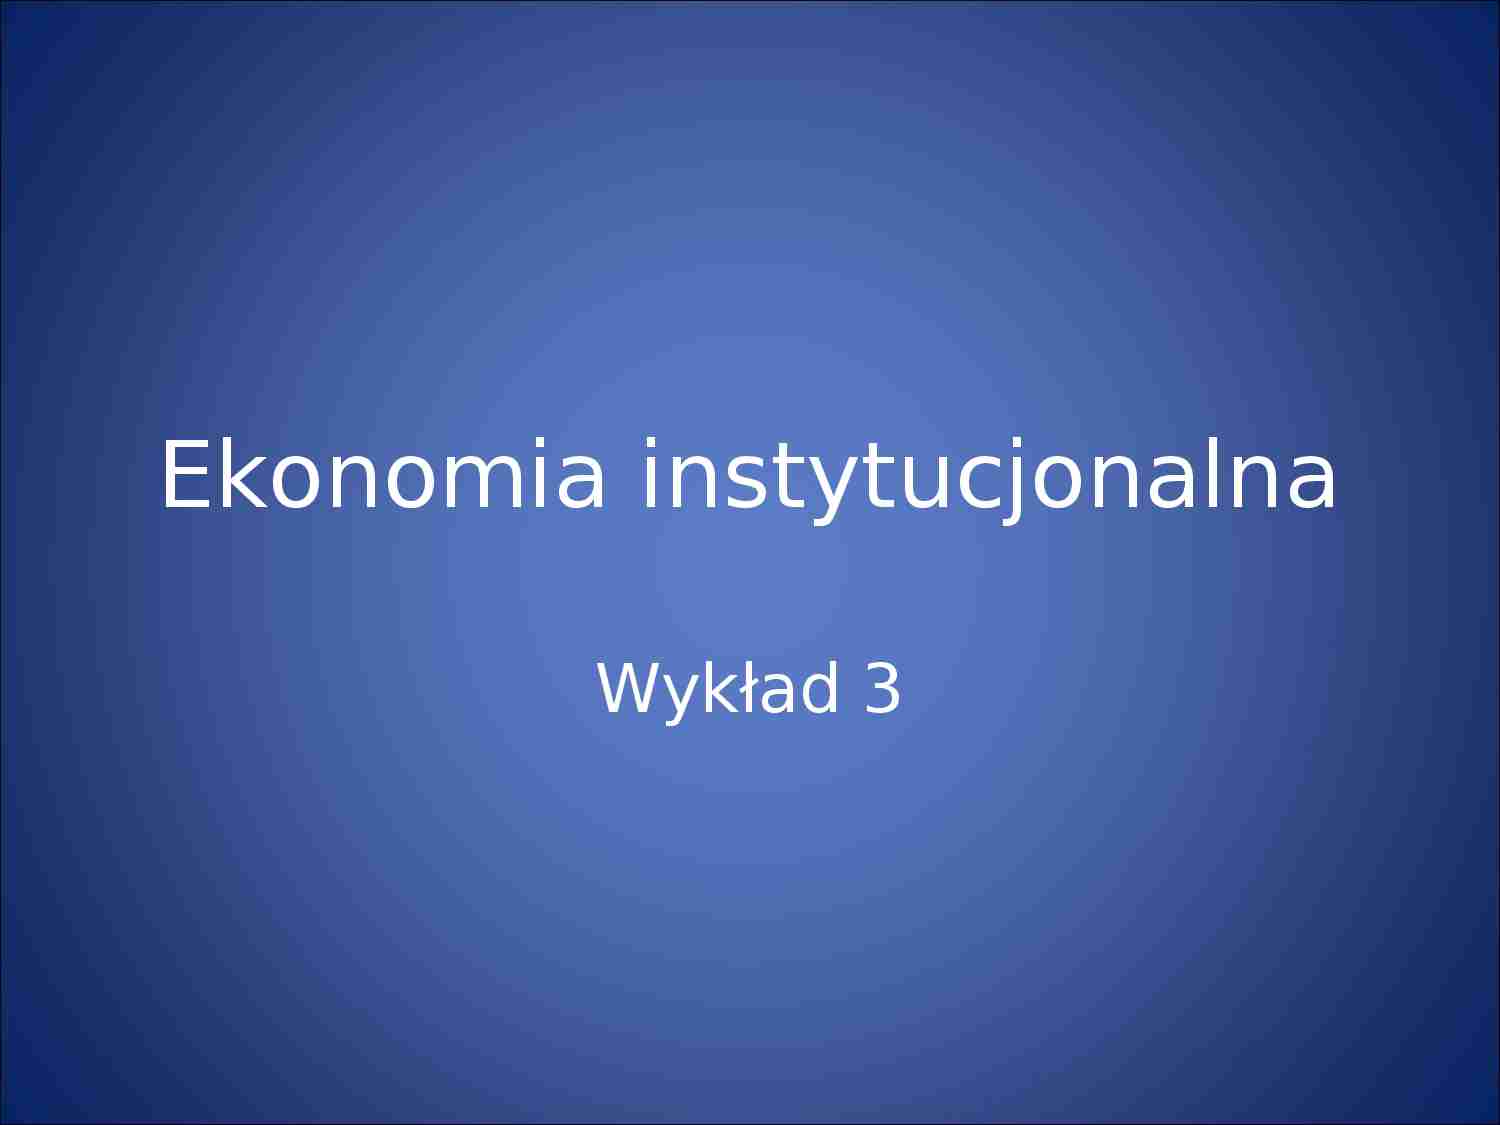 Ekonomia instytucjonalna - prezentacja - strona 1